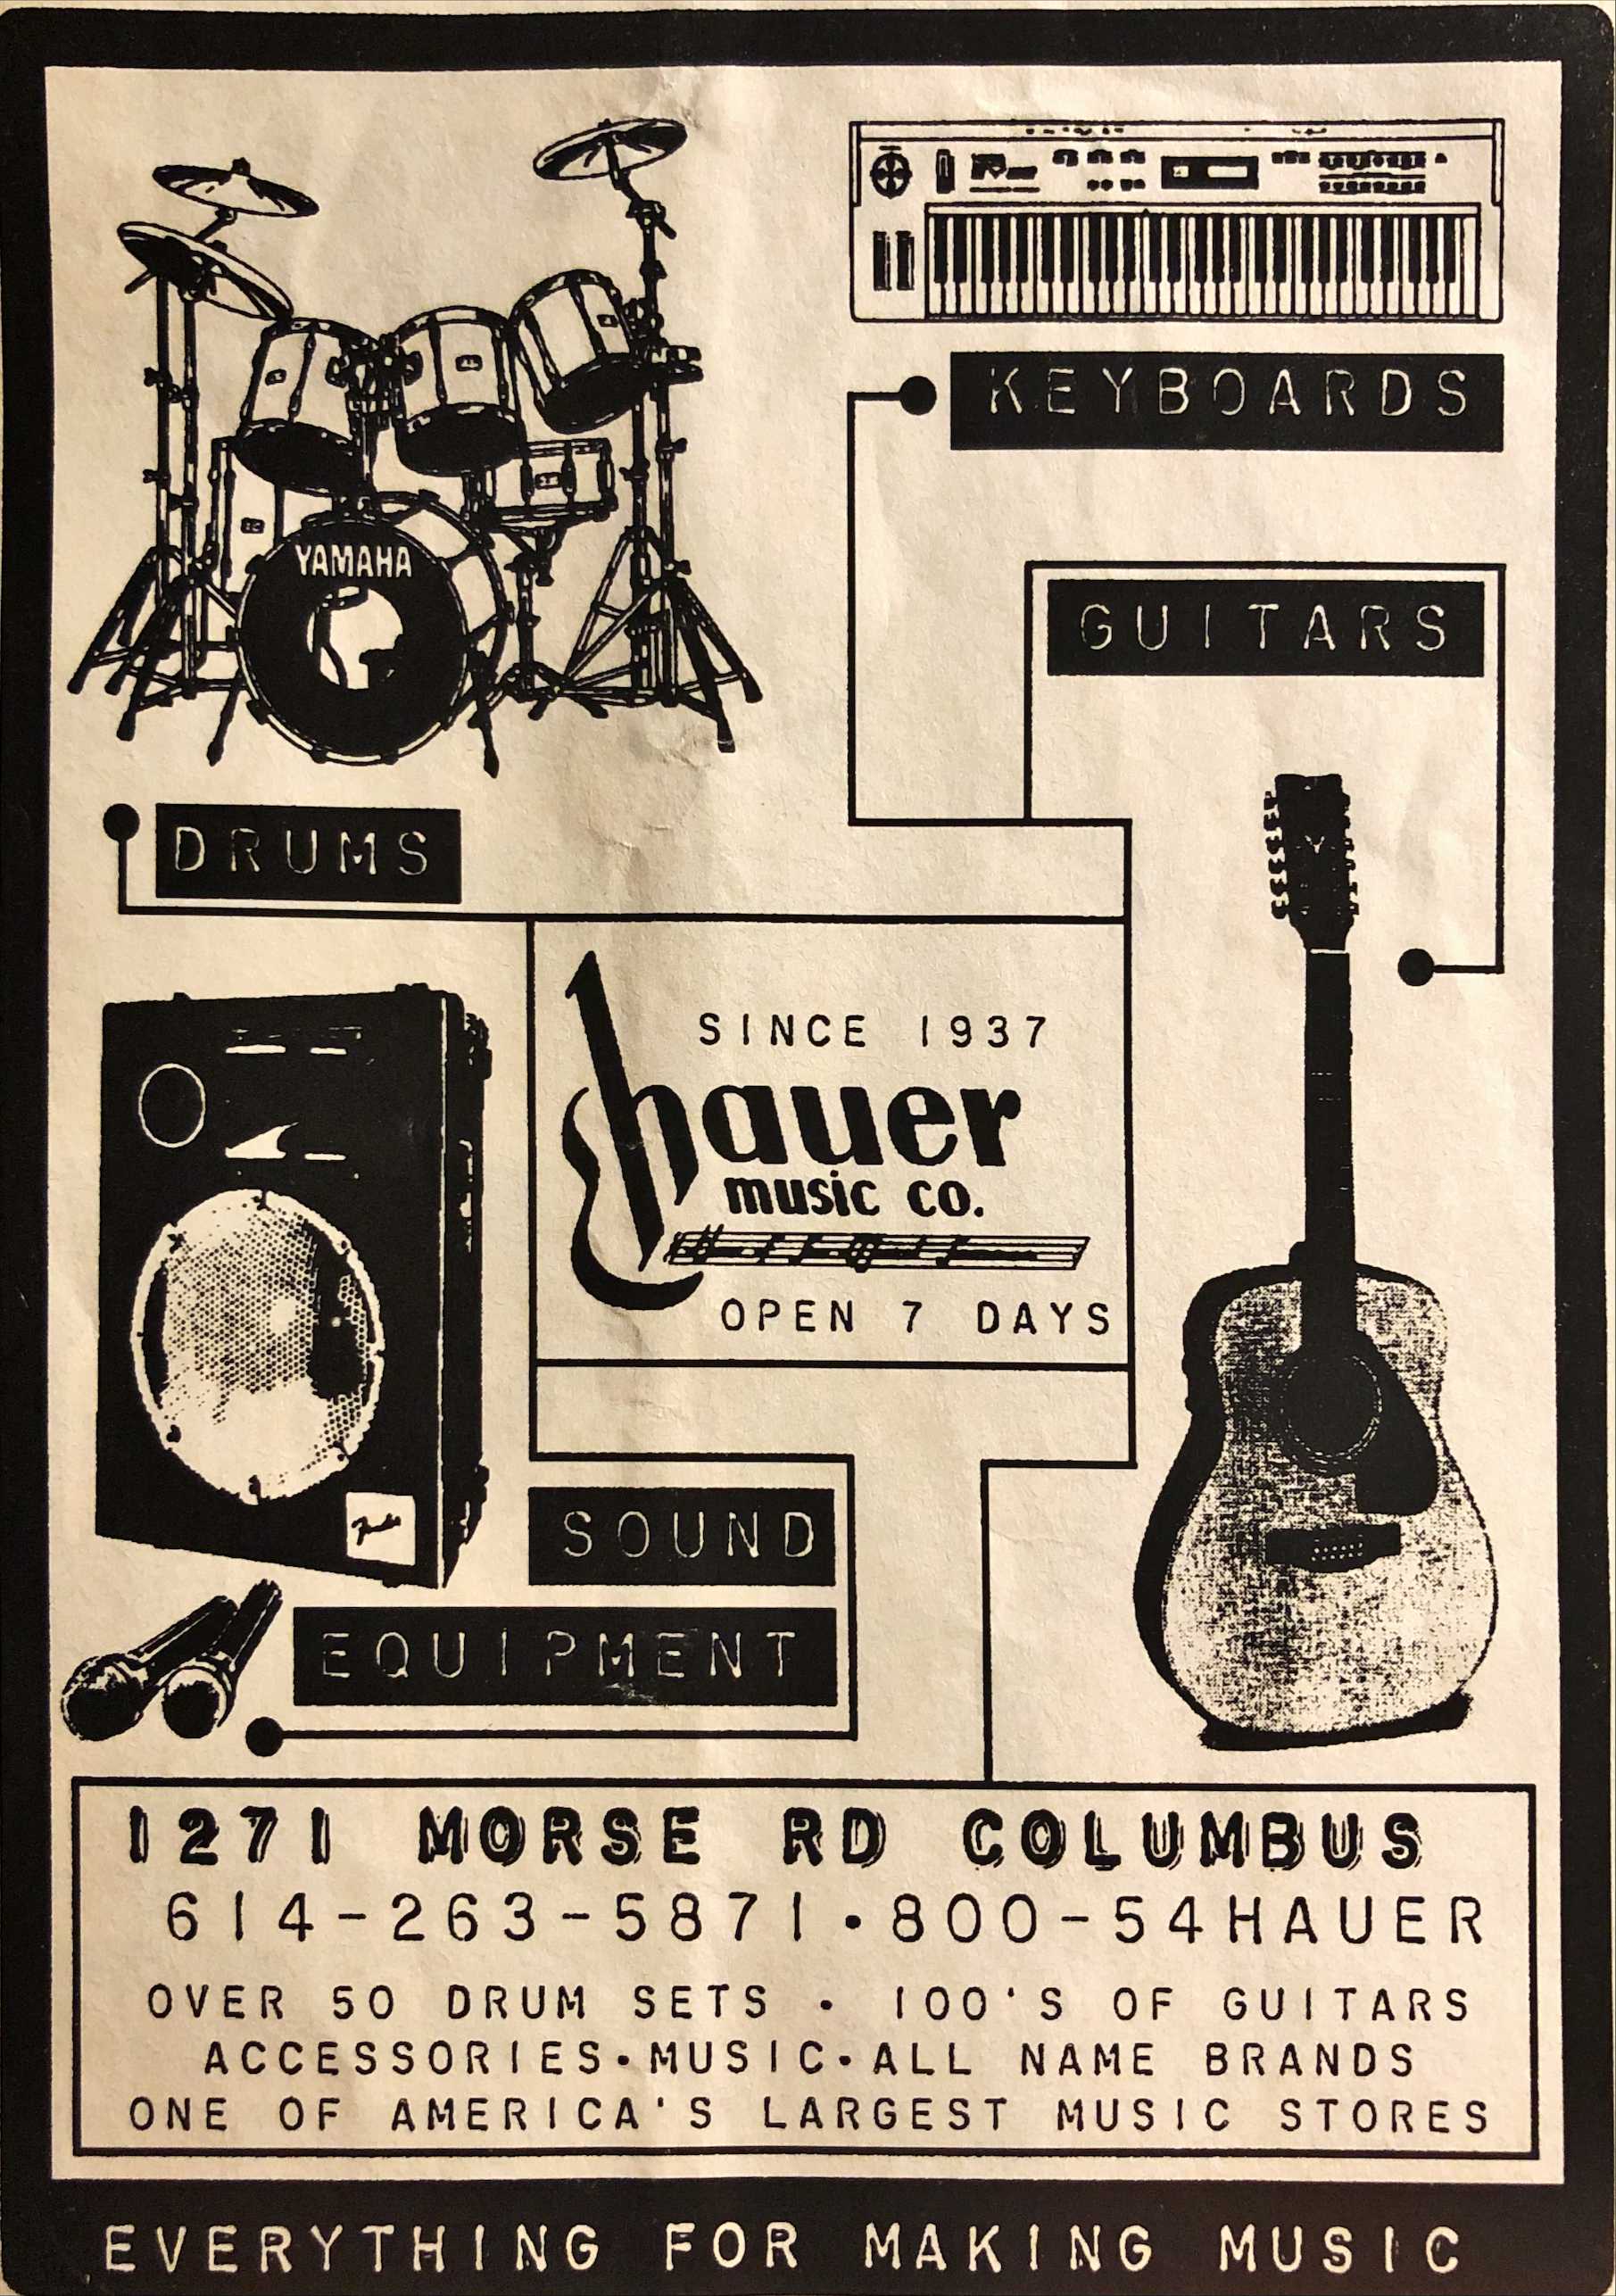 Hauer Music on Morse Road in Columbus Ohio